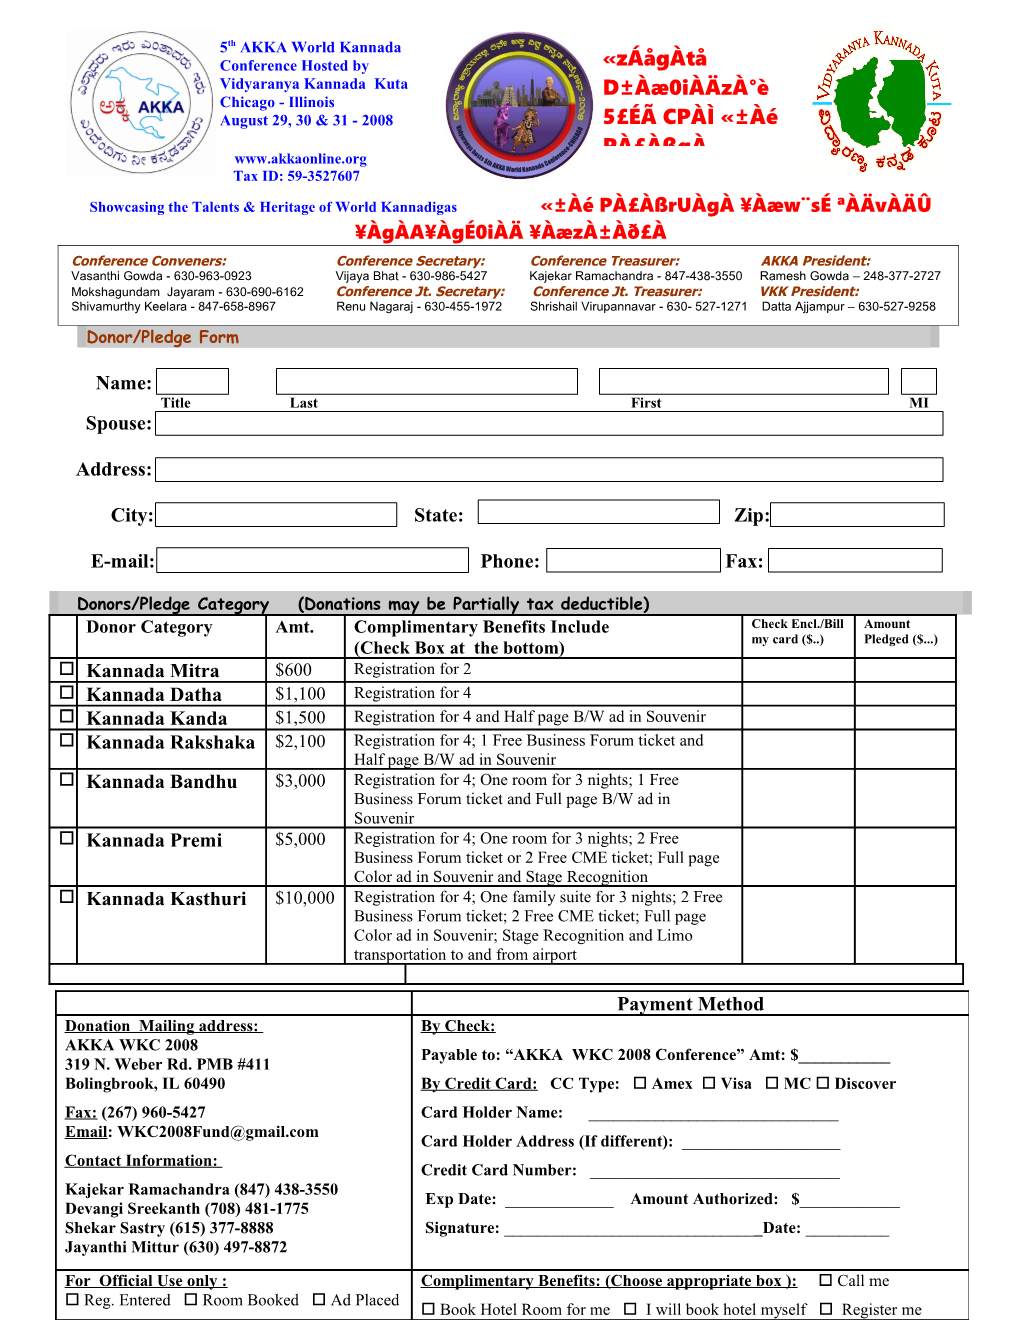 2008 AKKA WKC Pledge Form